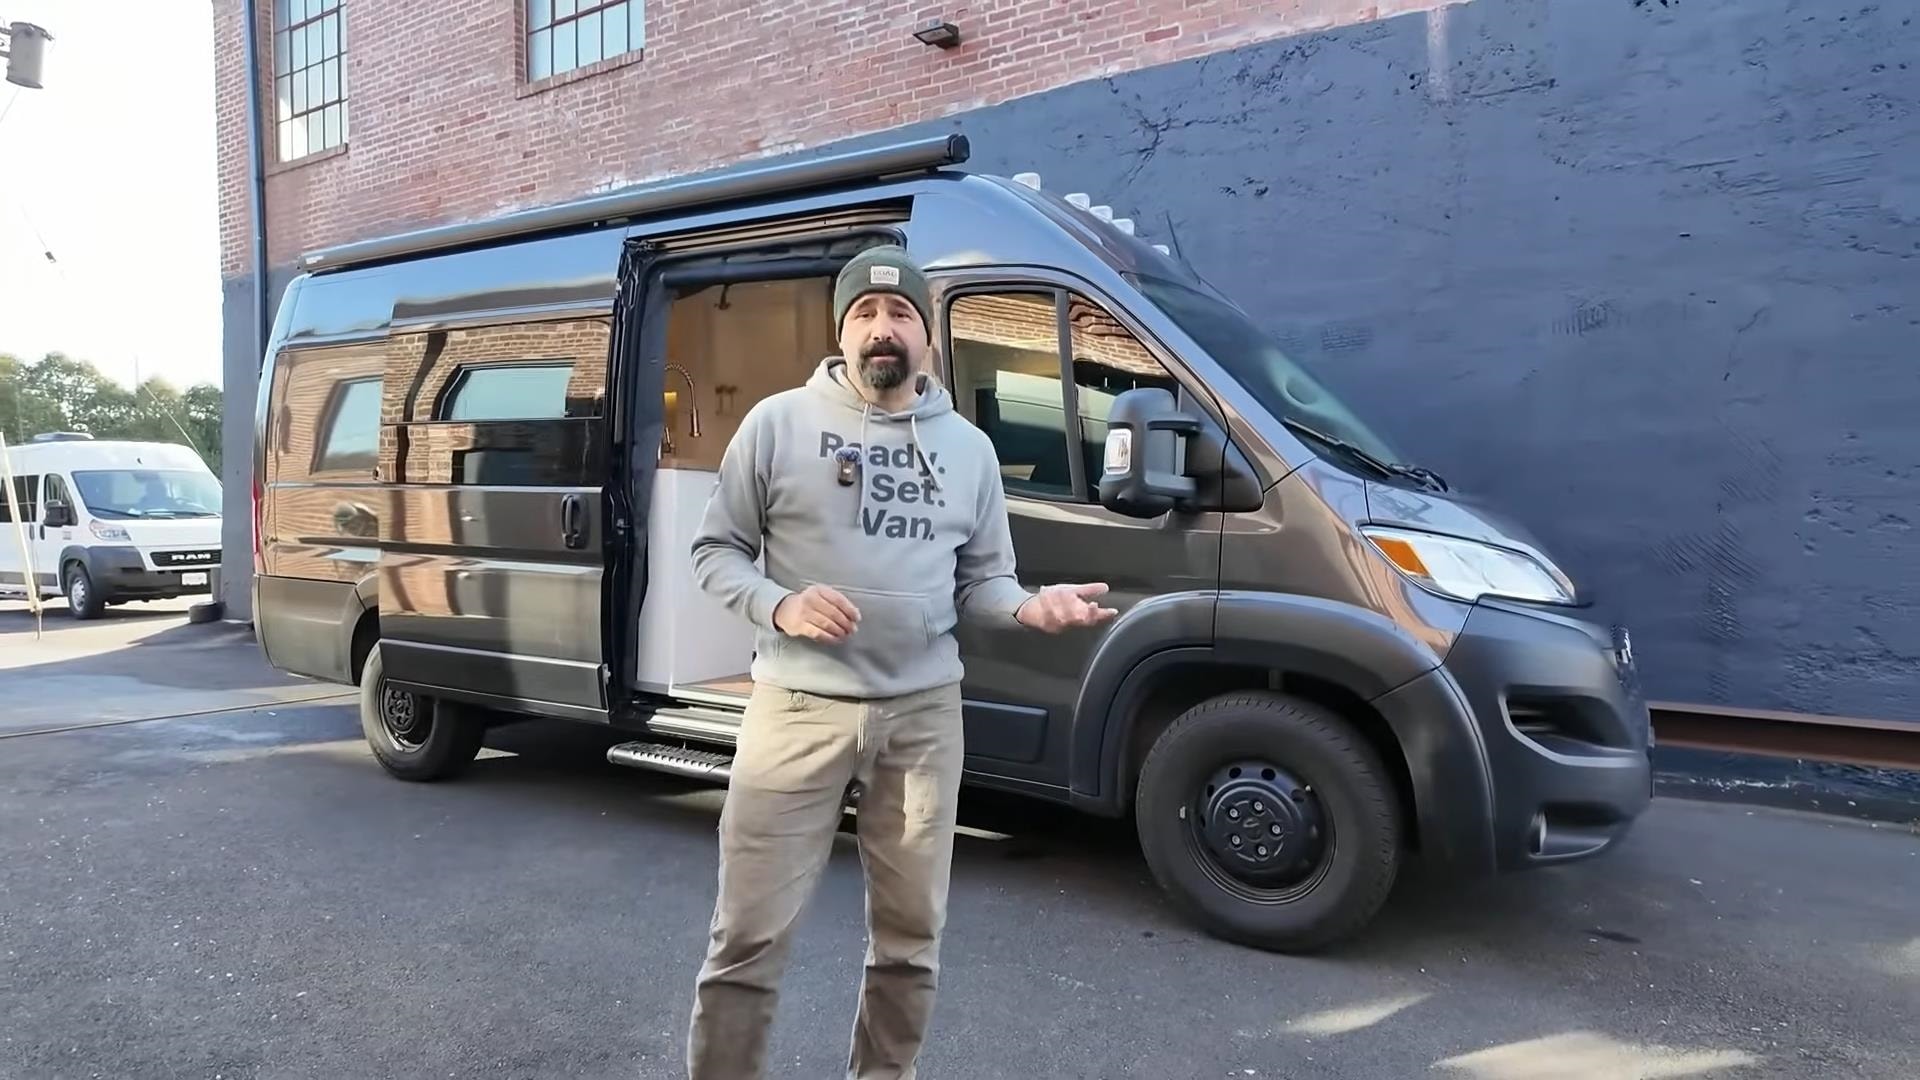 This Cozy Camper Van Is a Fancy Hotel Room on Wheels With a Hidden Bedroom